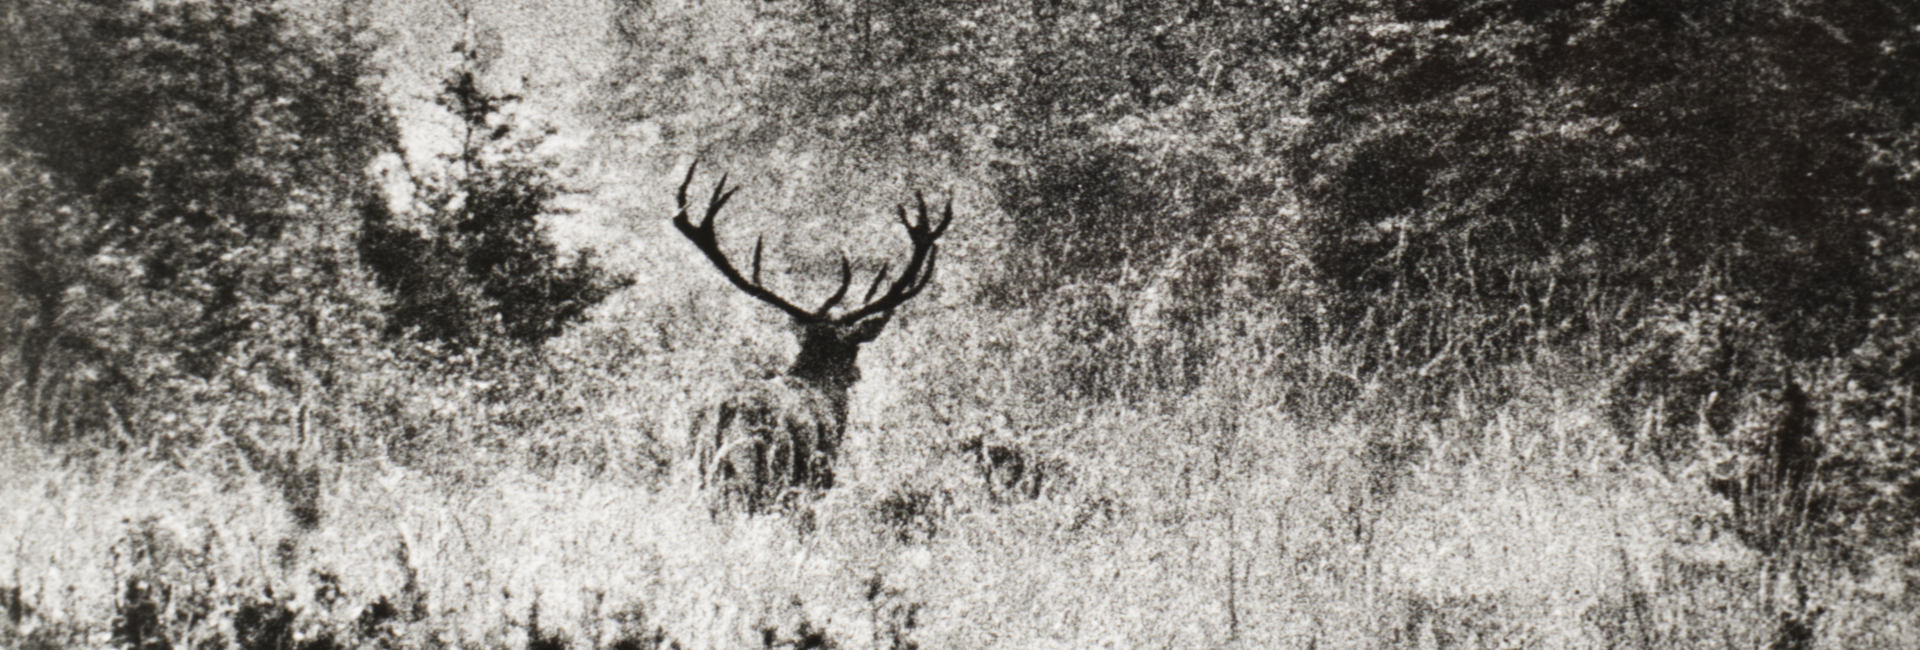 Deer, ca. 1972 [Sláva Štochl]